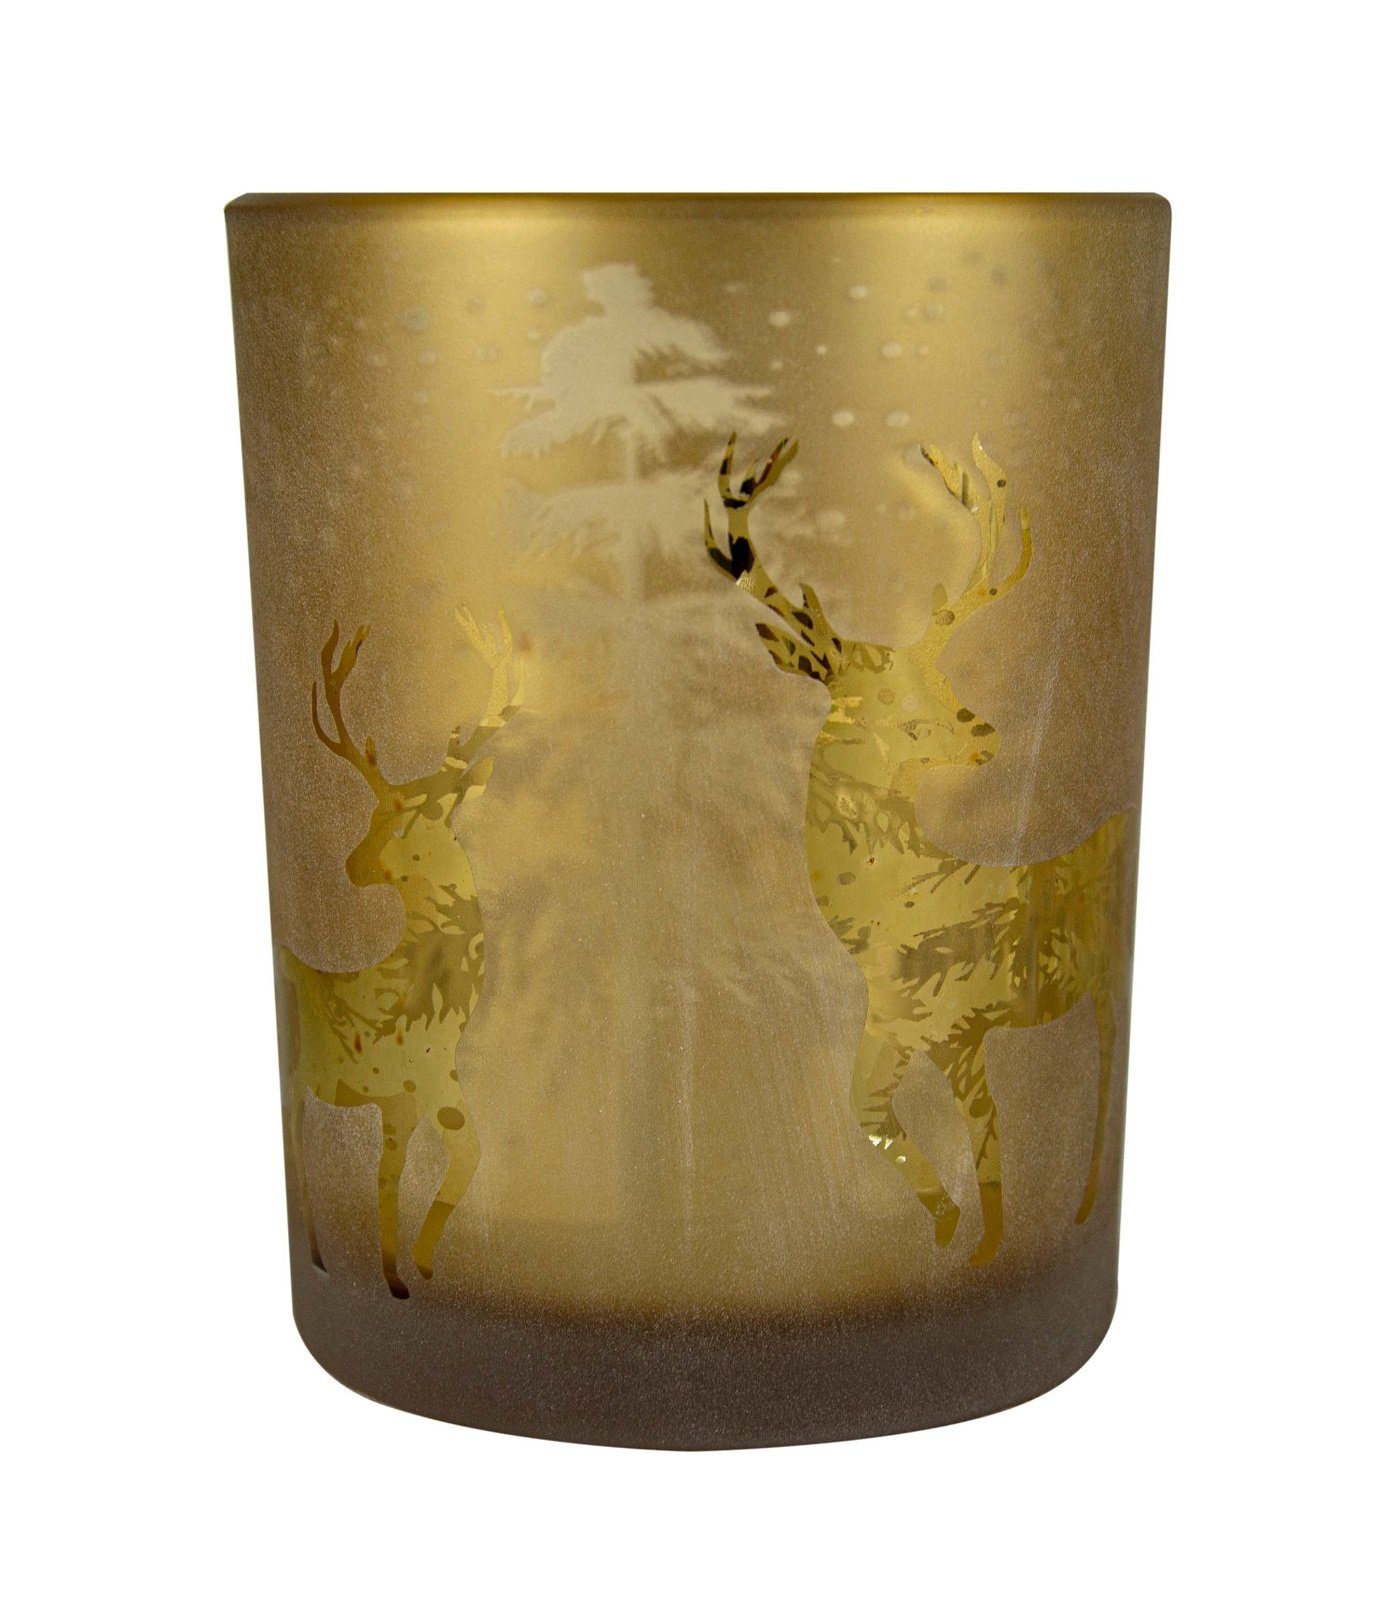 Parts4Living Windlicht Glas Teelichthalter mit Wald-und Rentiermotiv Teelichtglas mit Hirschen Tischdeko Weihnachtsdeko braun gold 12x18 cm, im rustikalen Landhaus Stil